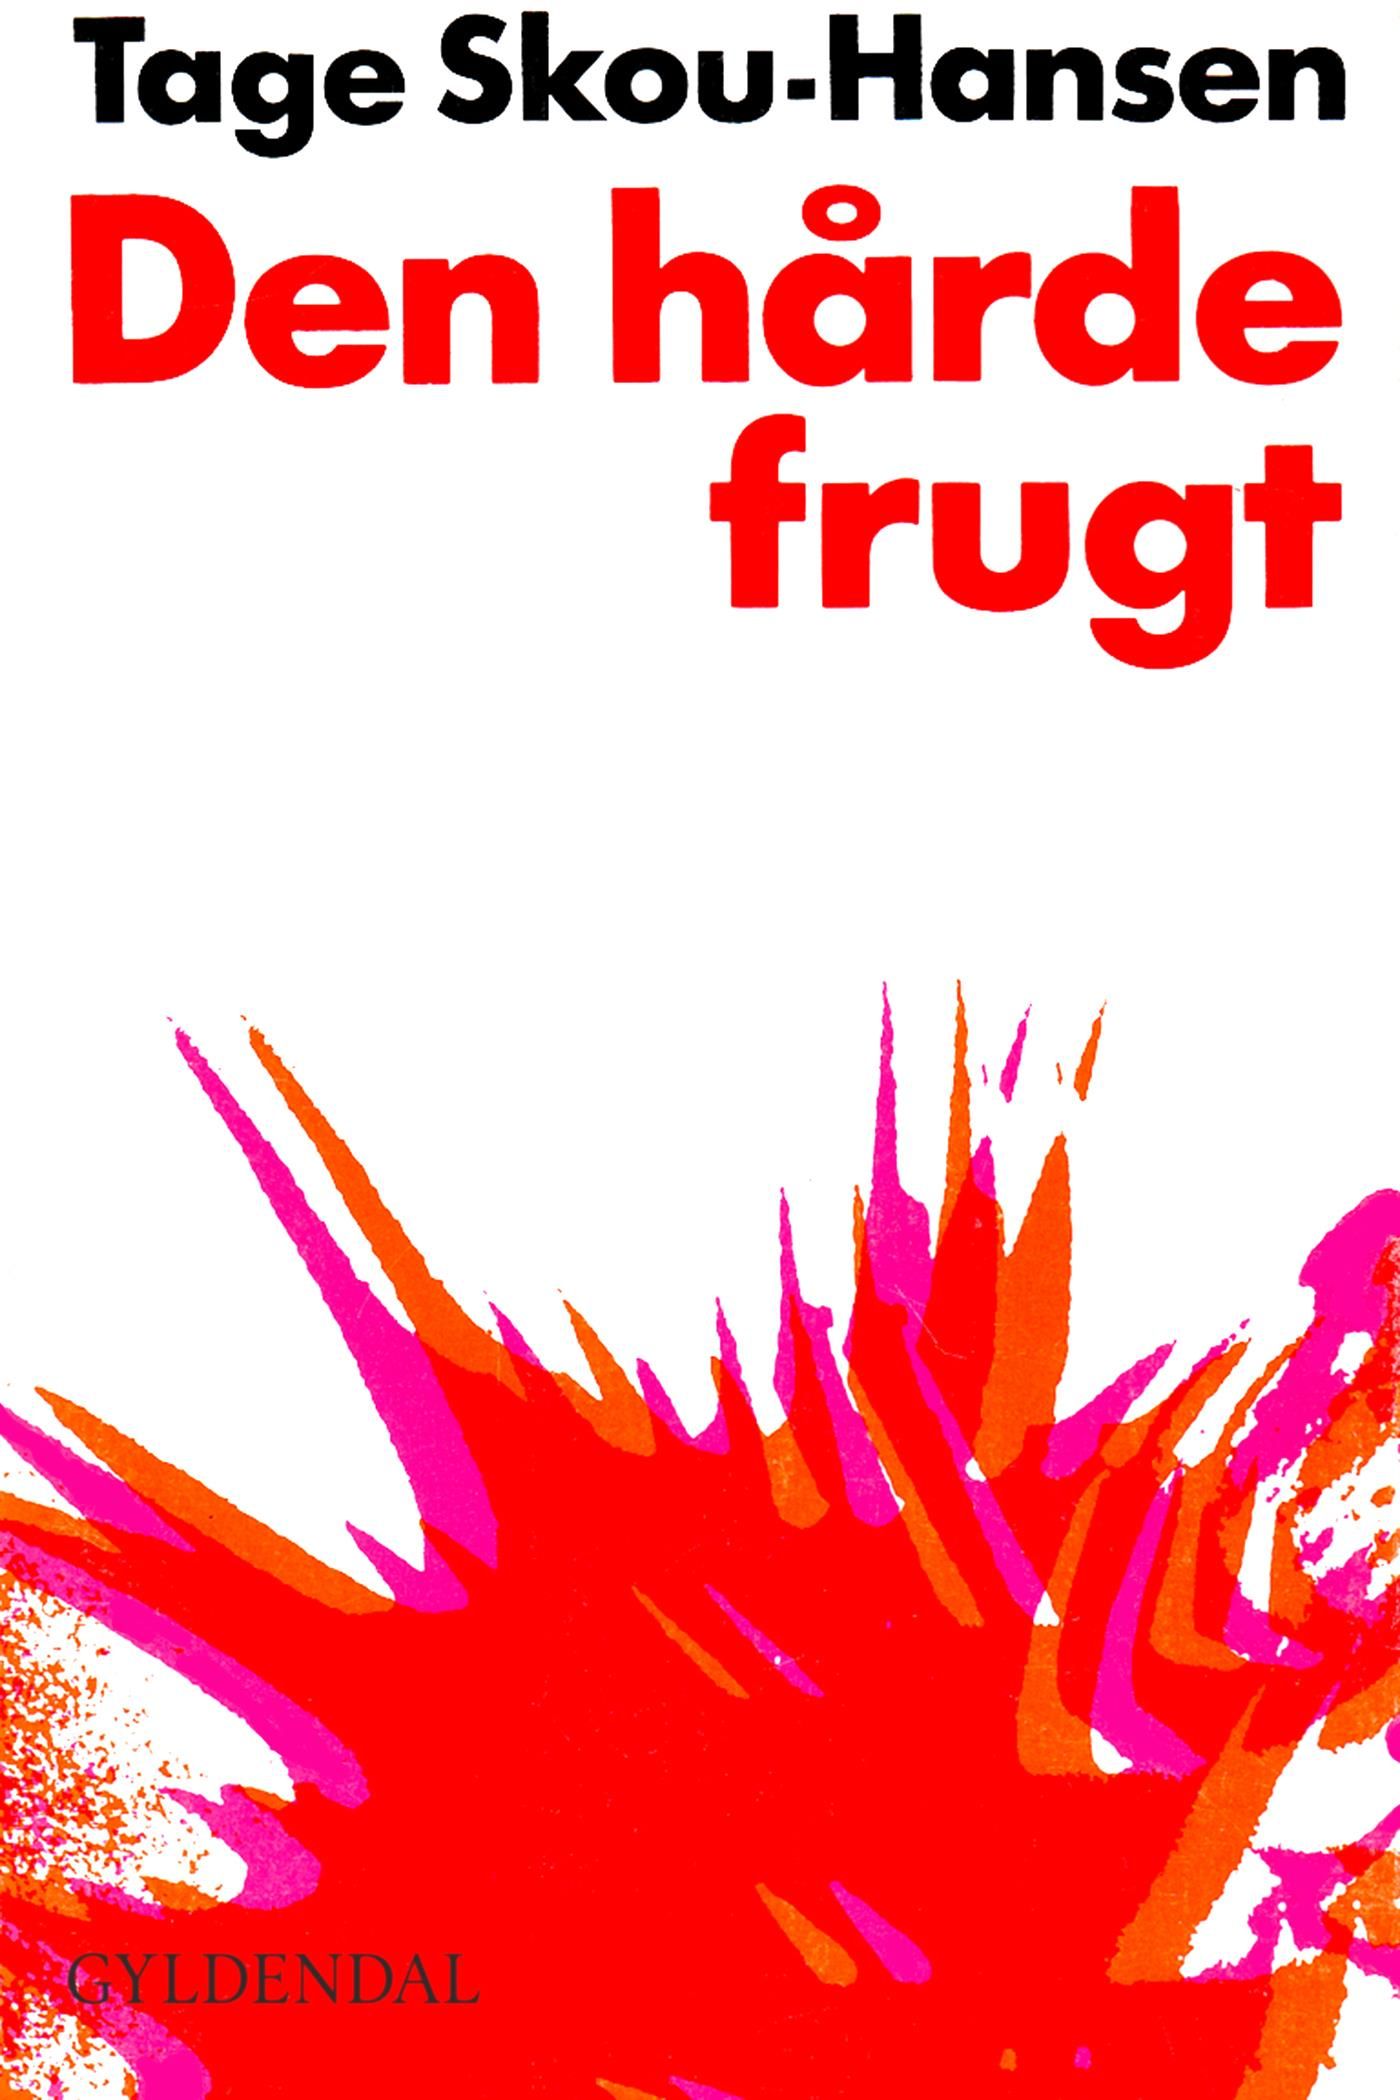 Den hårde frugt, e-bog af Tage Skou-Hansen